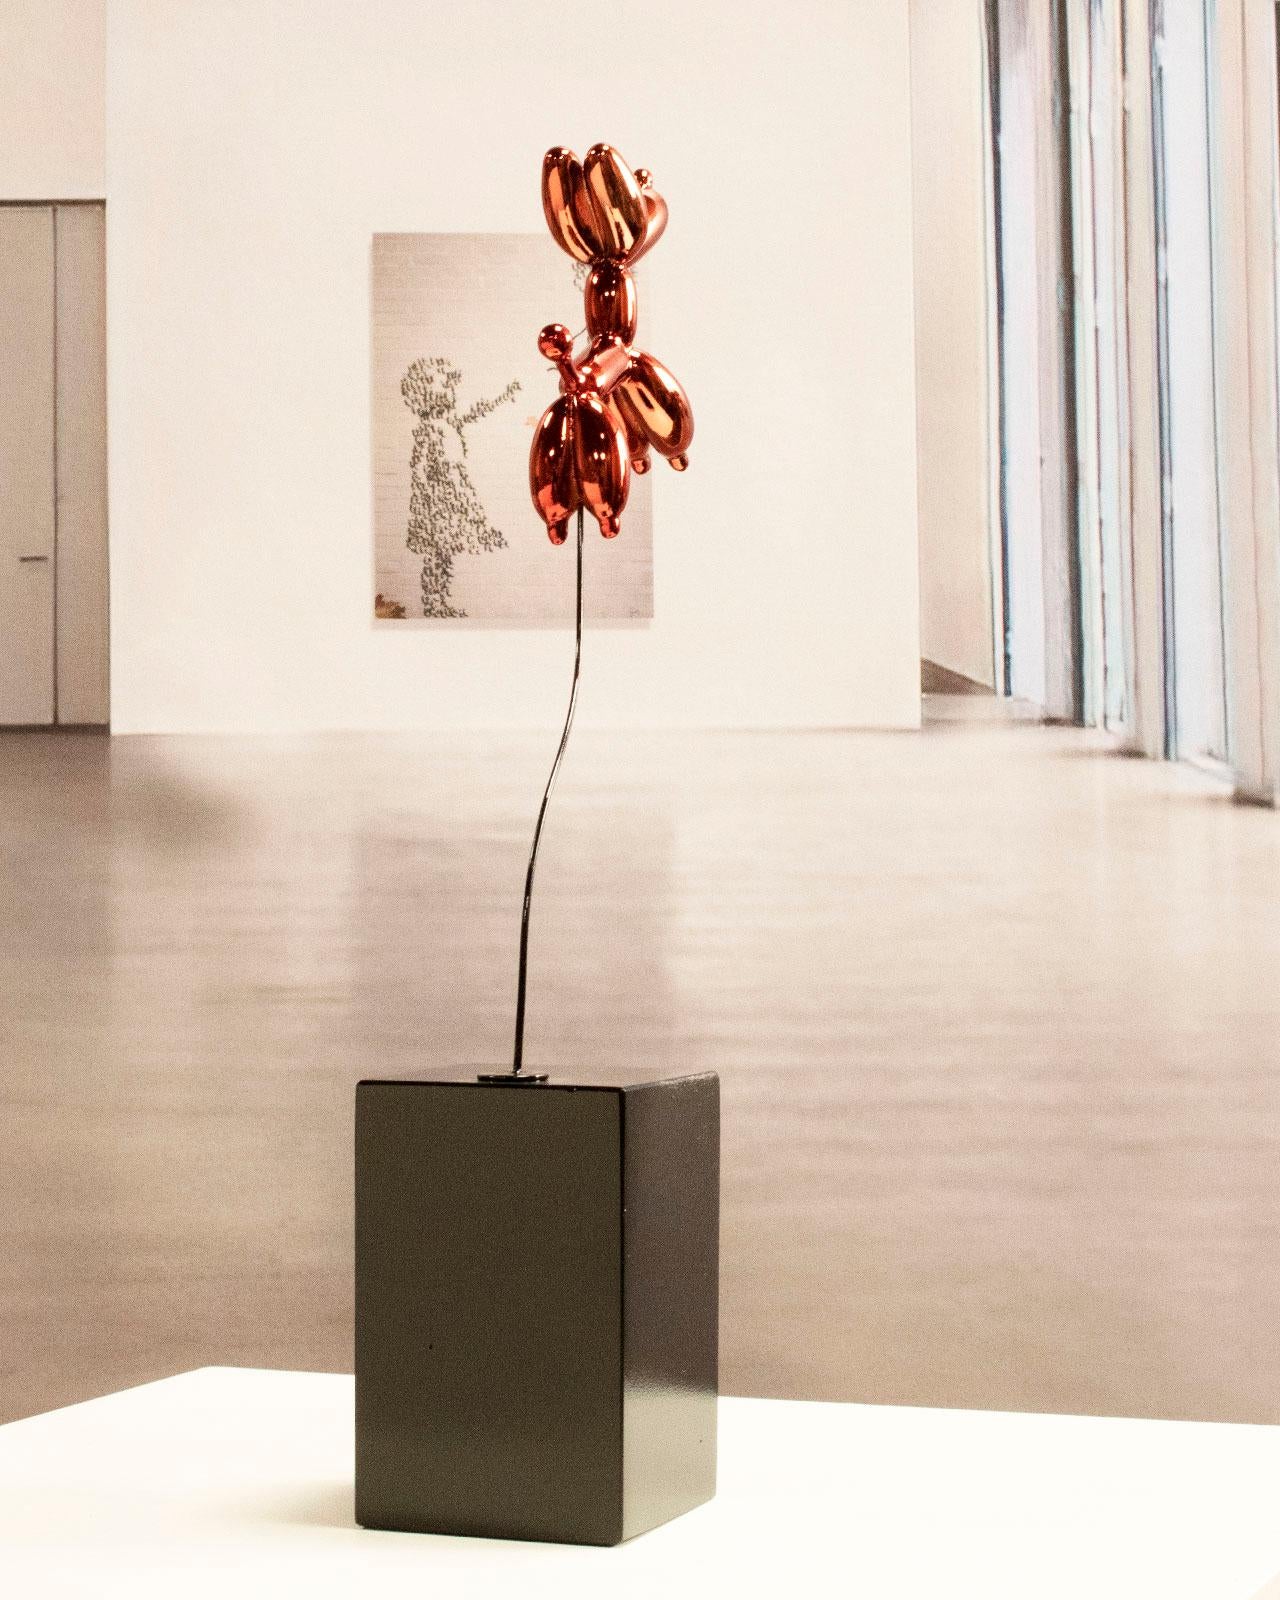 Weightless balloon dog red - Miguel Guía, Pop Art Nickel layer Sculpture 6